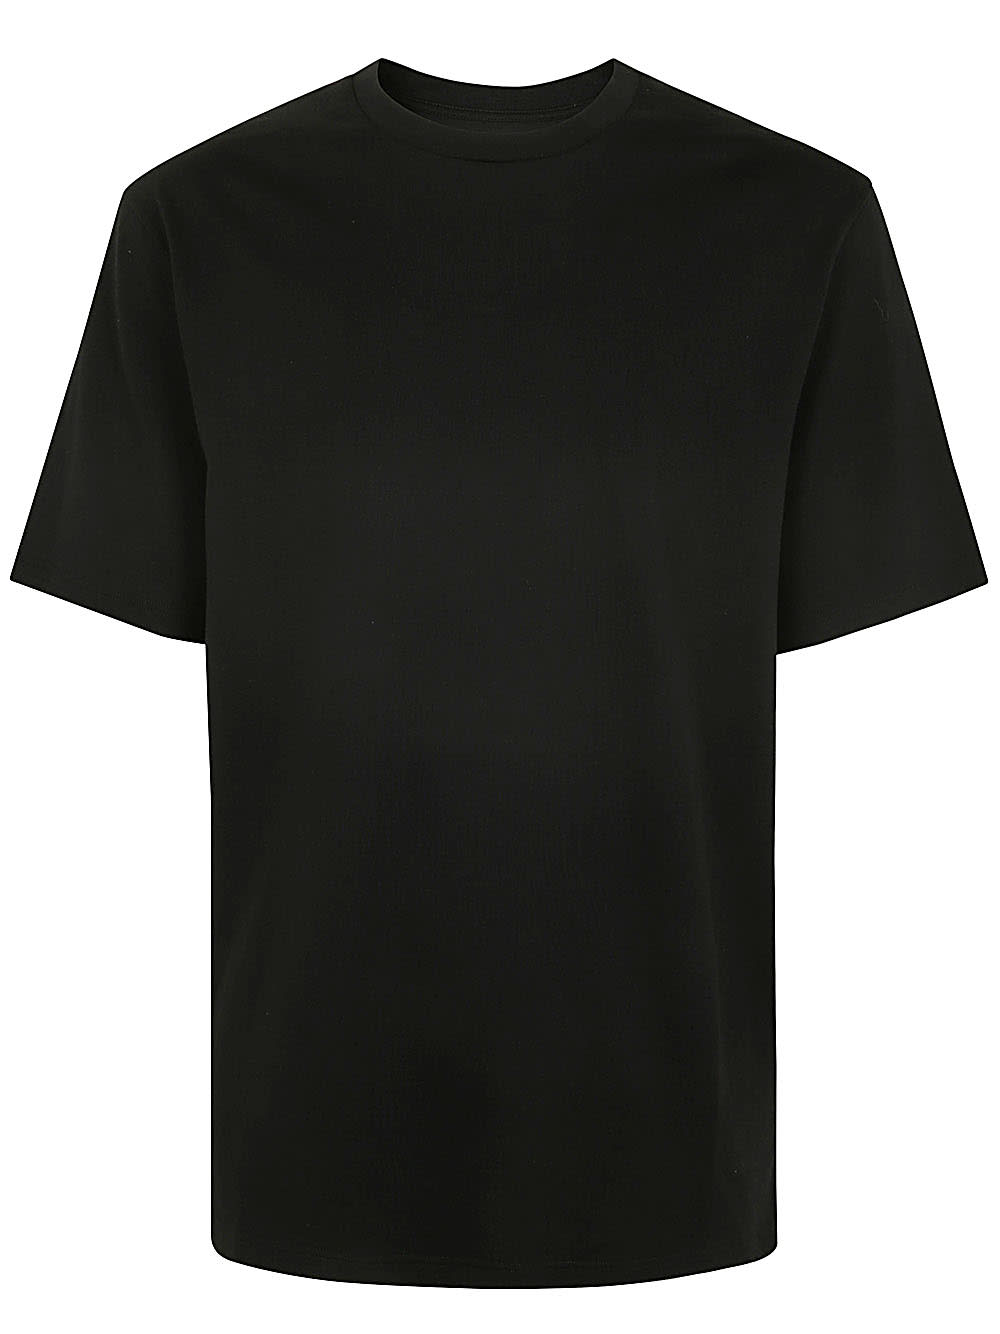 Shop Jil Sander T-shirt In Black